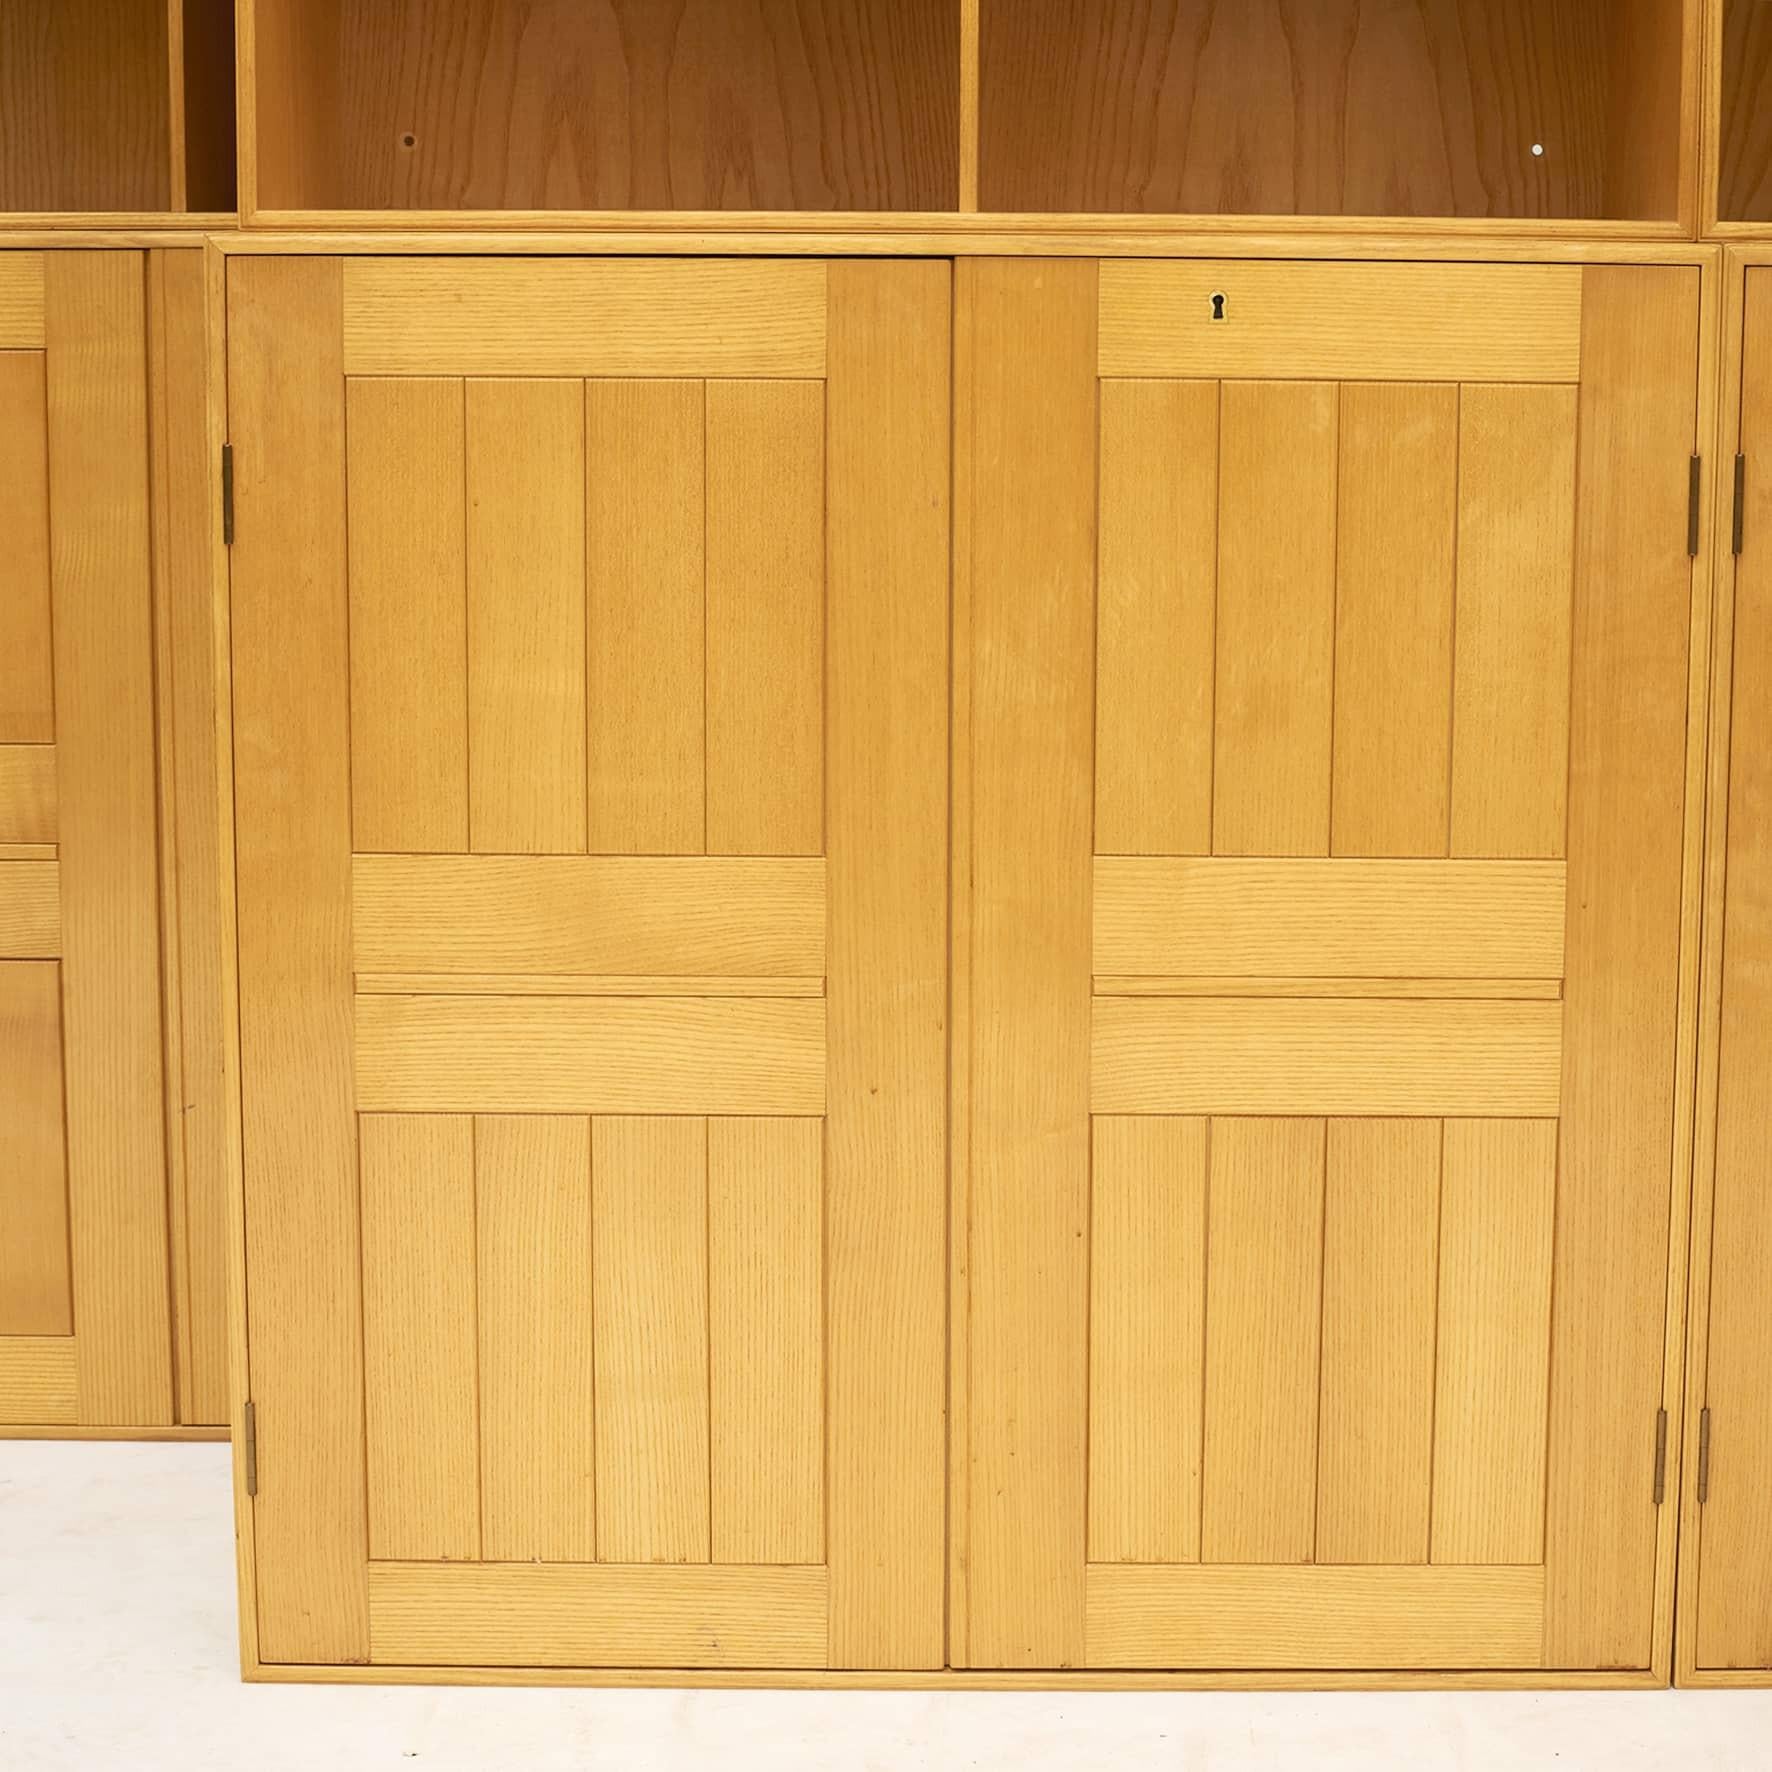 Mogens Koch 1888-1993.
5 armoires et 5 bibliothèques en bois de frêne massif par l'ébéniste Rud. Rasmussen. Label au dos.
ne sont plus fabriqués en bois de frêne.
Aucune base n'a été accrochée au mur. Clés et vis en laiton pour le montage